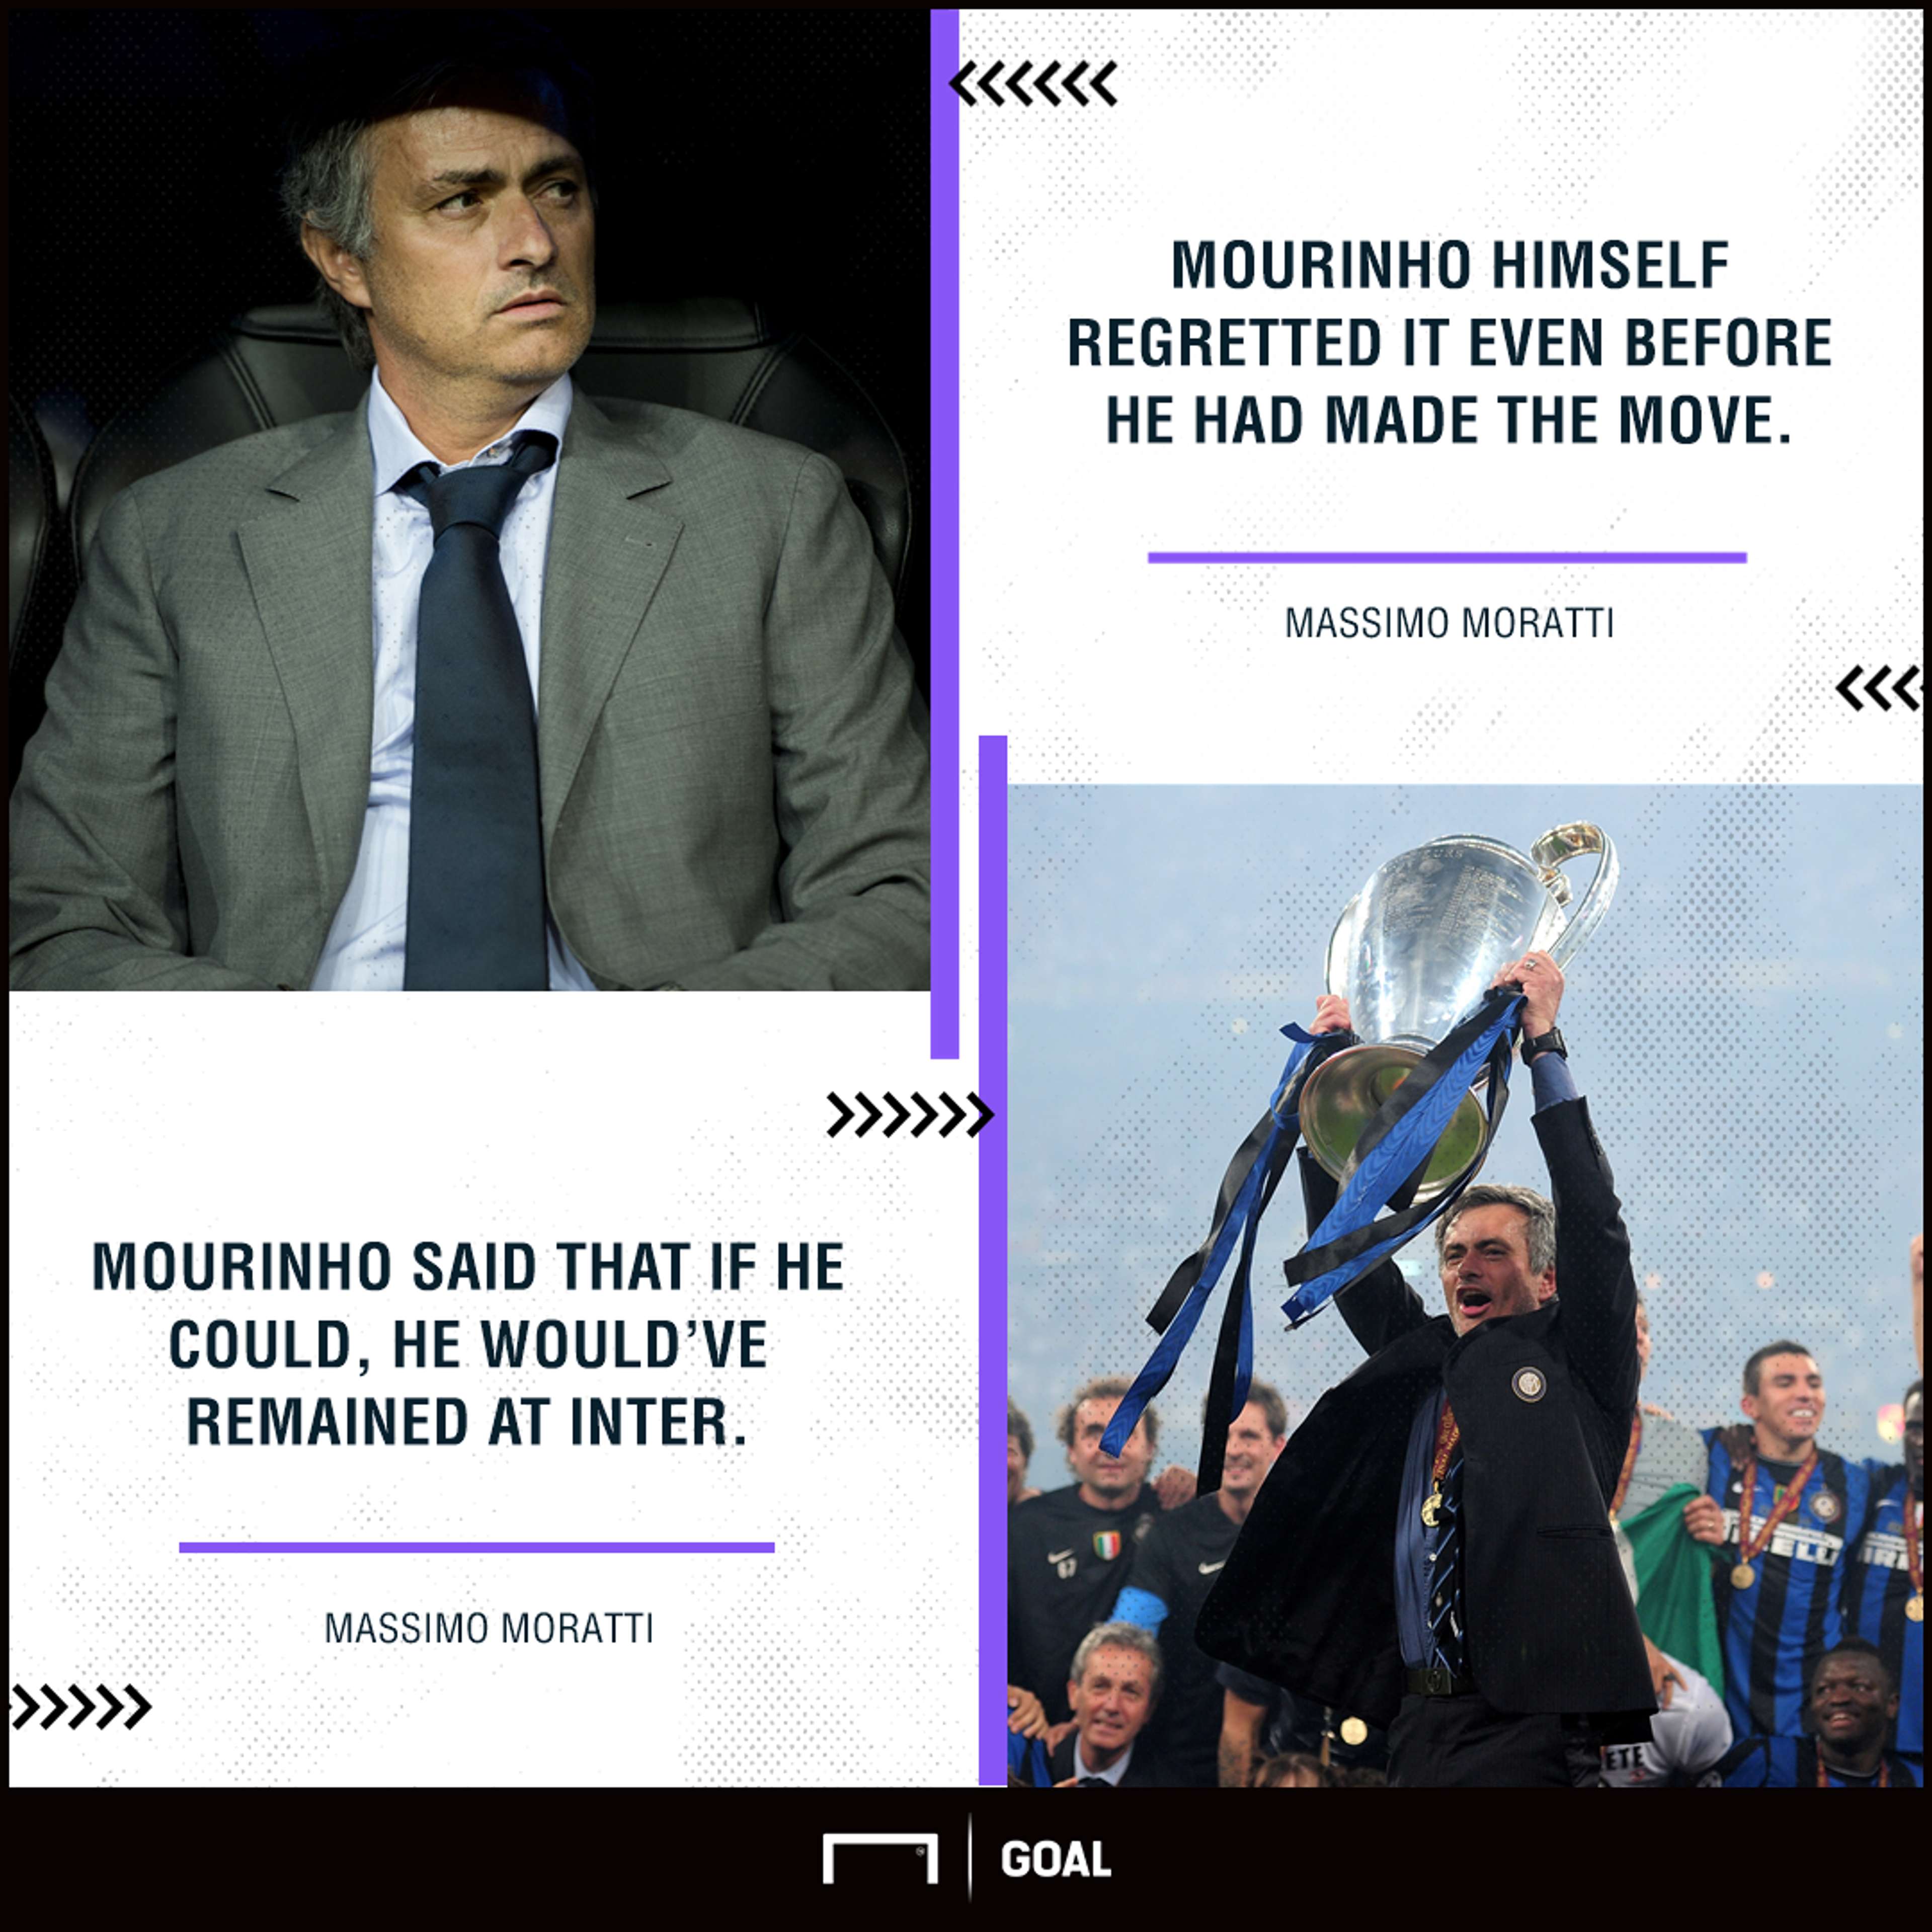 Jose Mourinho Inter regret Massimo Moratti